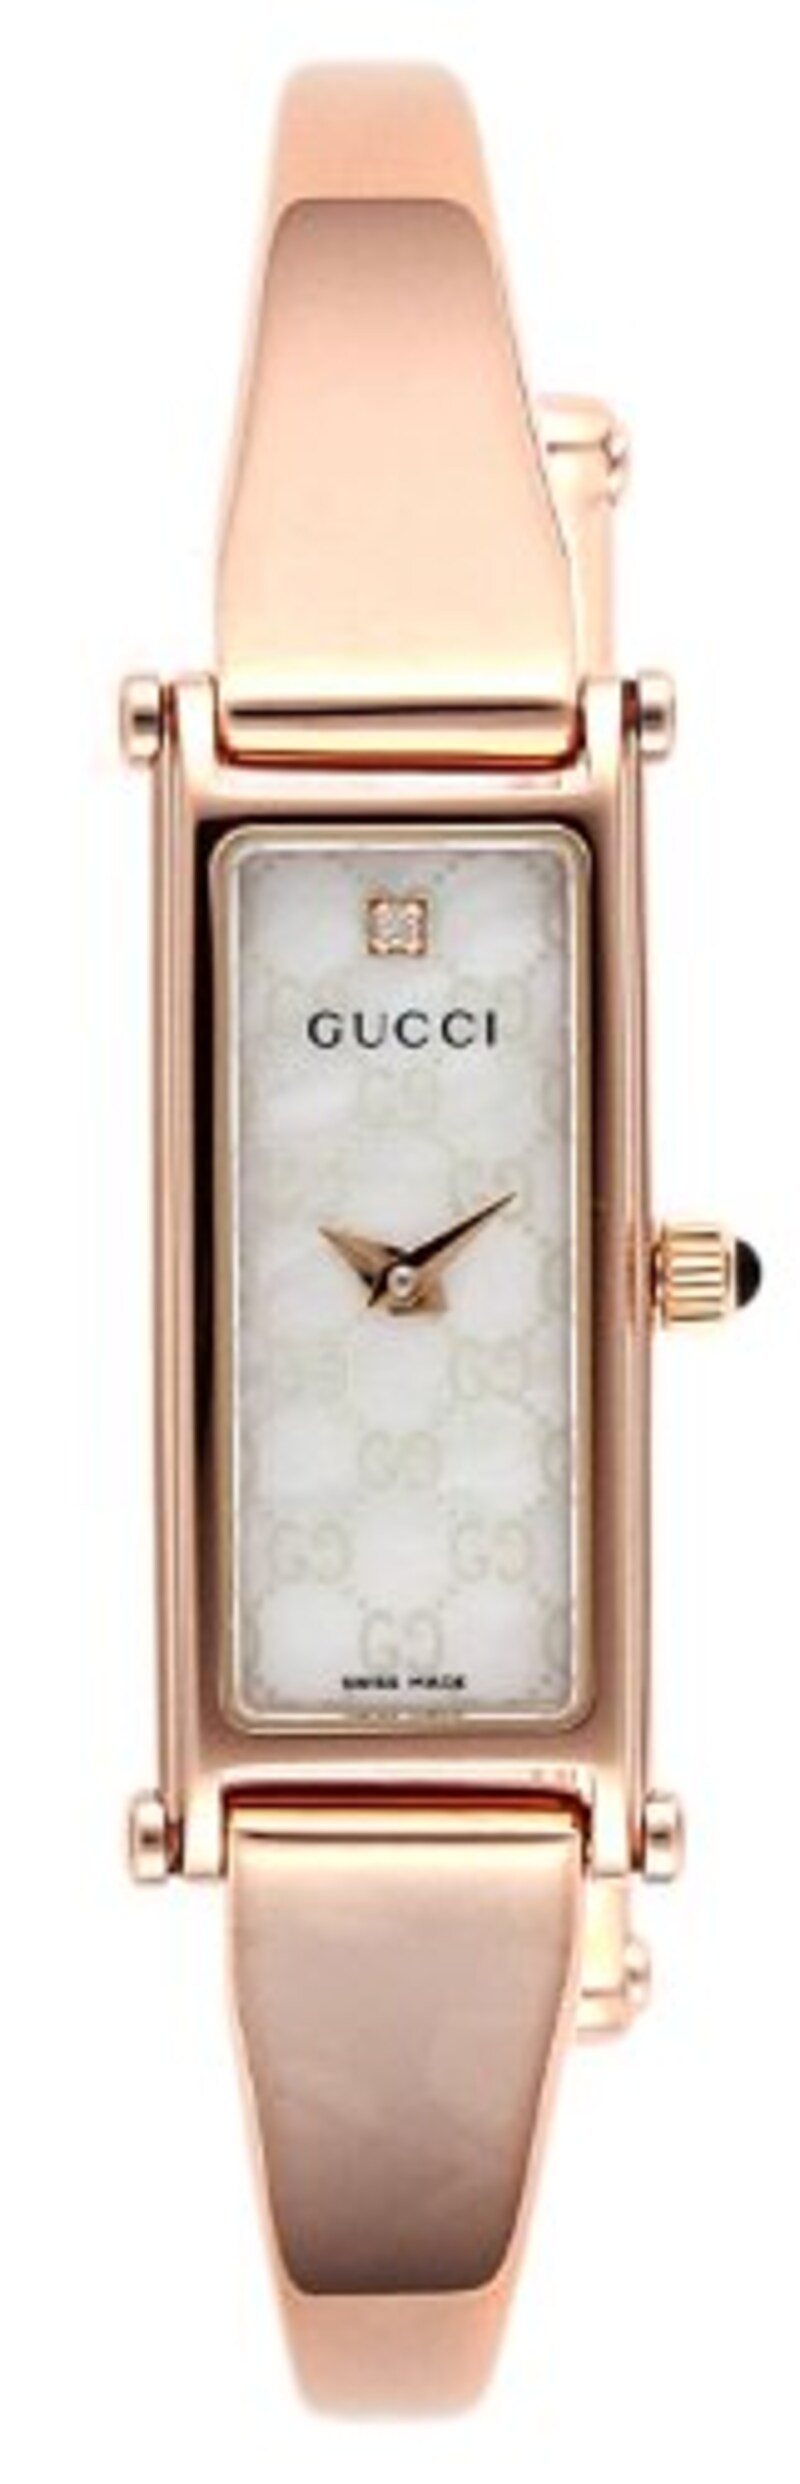 GUCCI（グッチ）,腕時計 1500 ピンクゴールド,YA015560